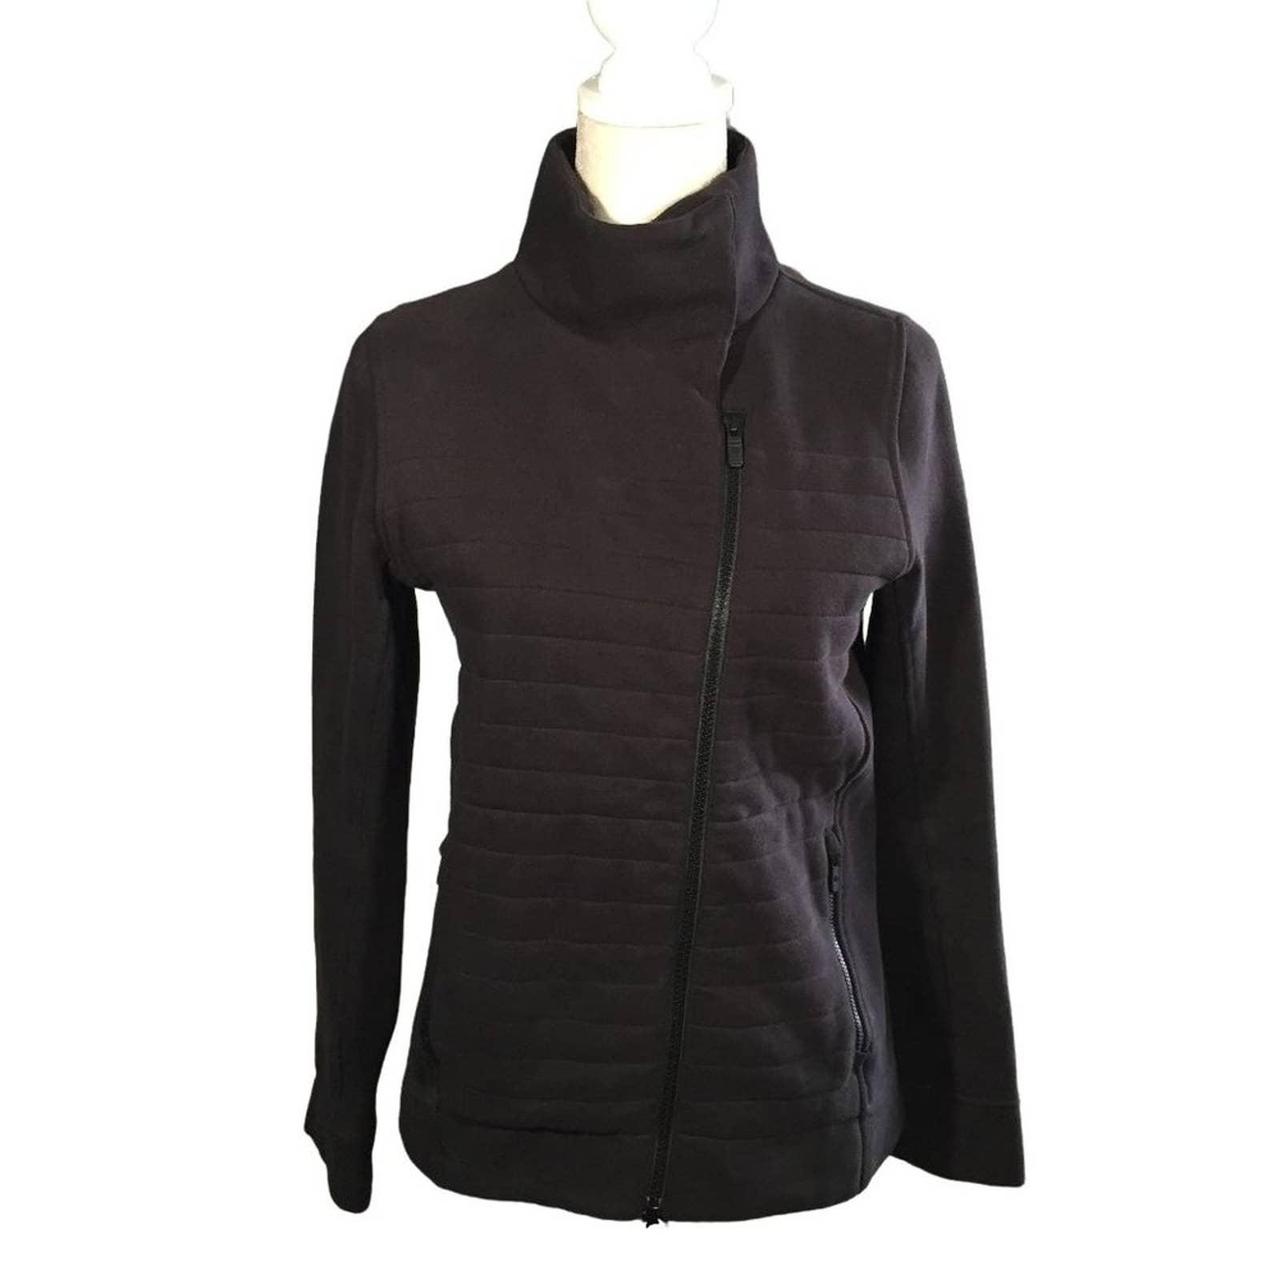 LULULEMON black sweatshirt jacket full zip sz 4 or s... - Depop